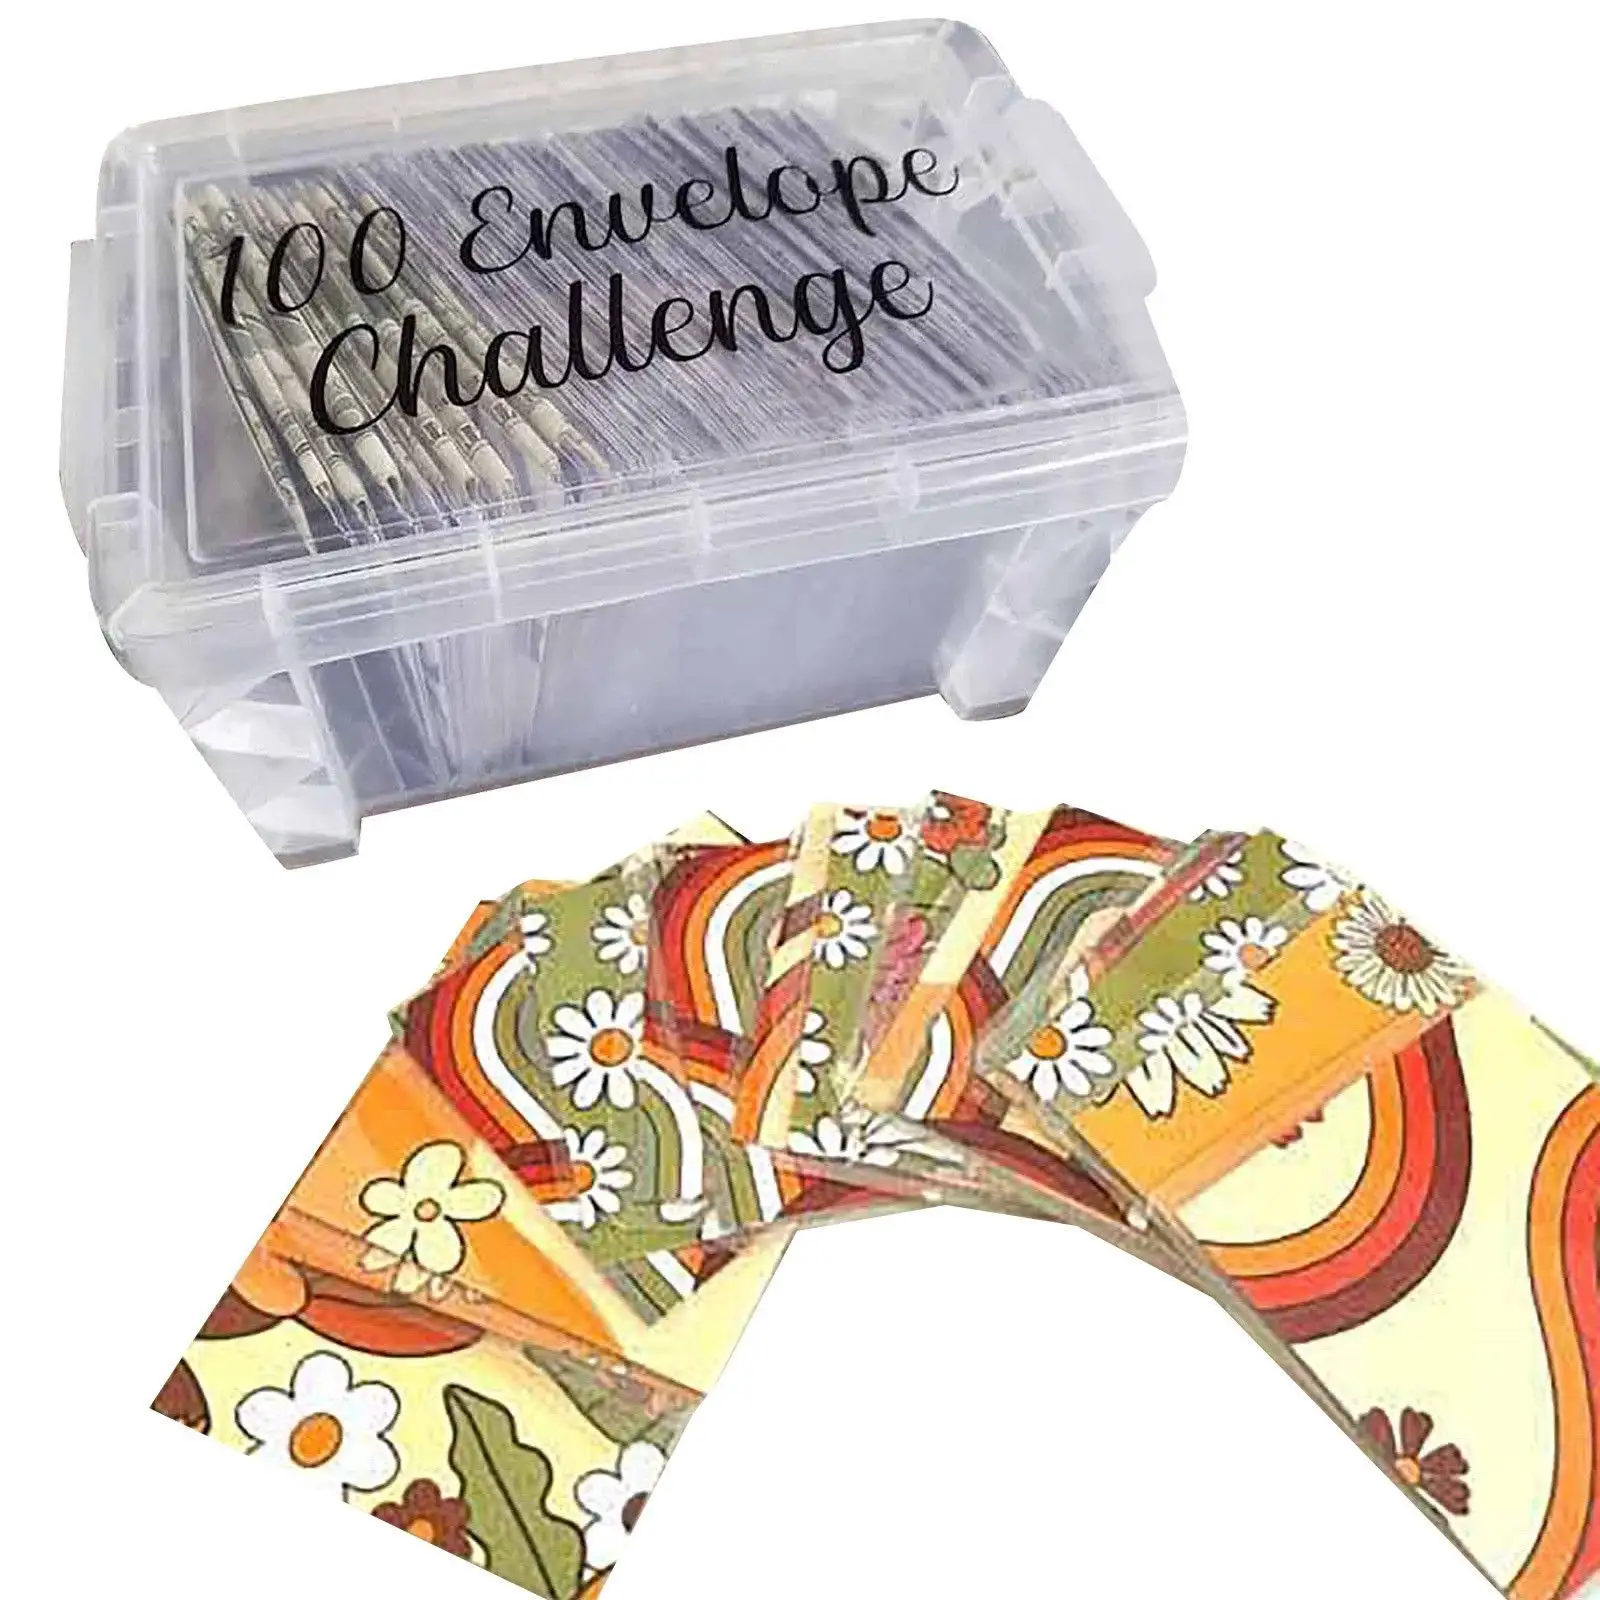 100 sobres caja de desafío para ahorrar dinero, planificador de presupuestos, sobres impermeables para ahorrar dinero en efectivo